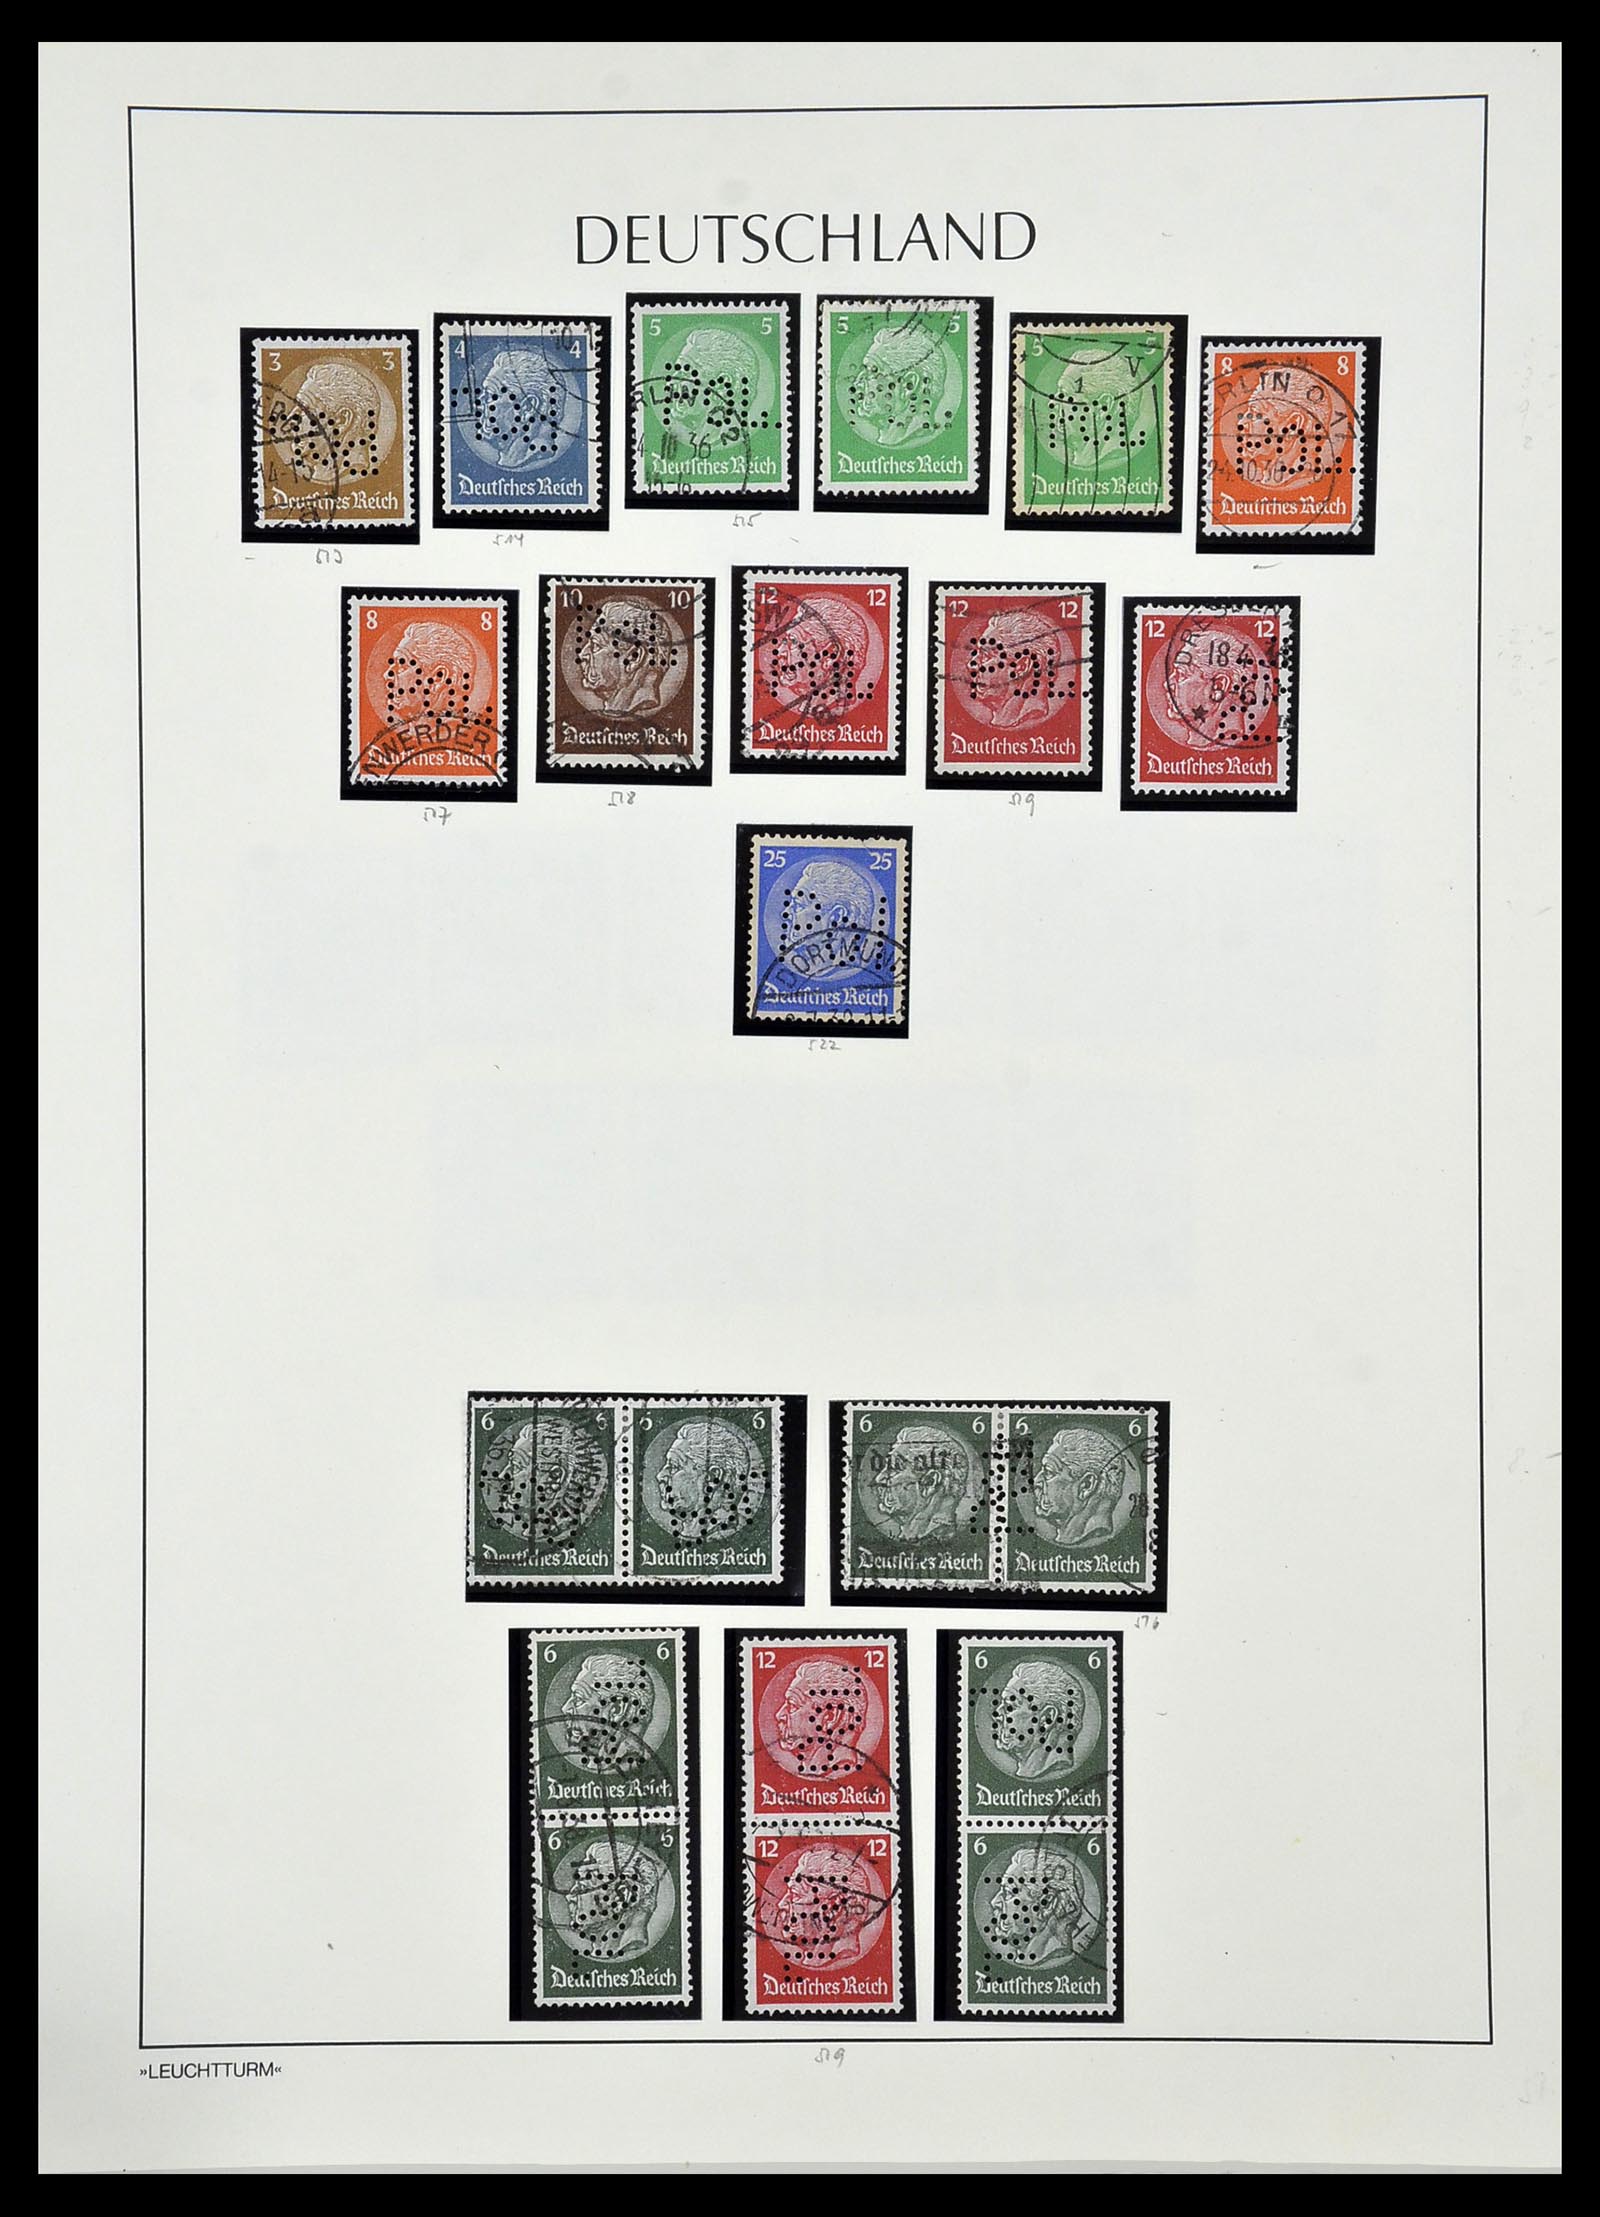 34409 024 - Stamp Collection 34409 German Reich perfins.